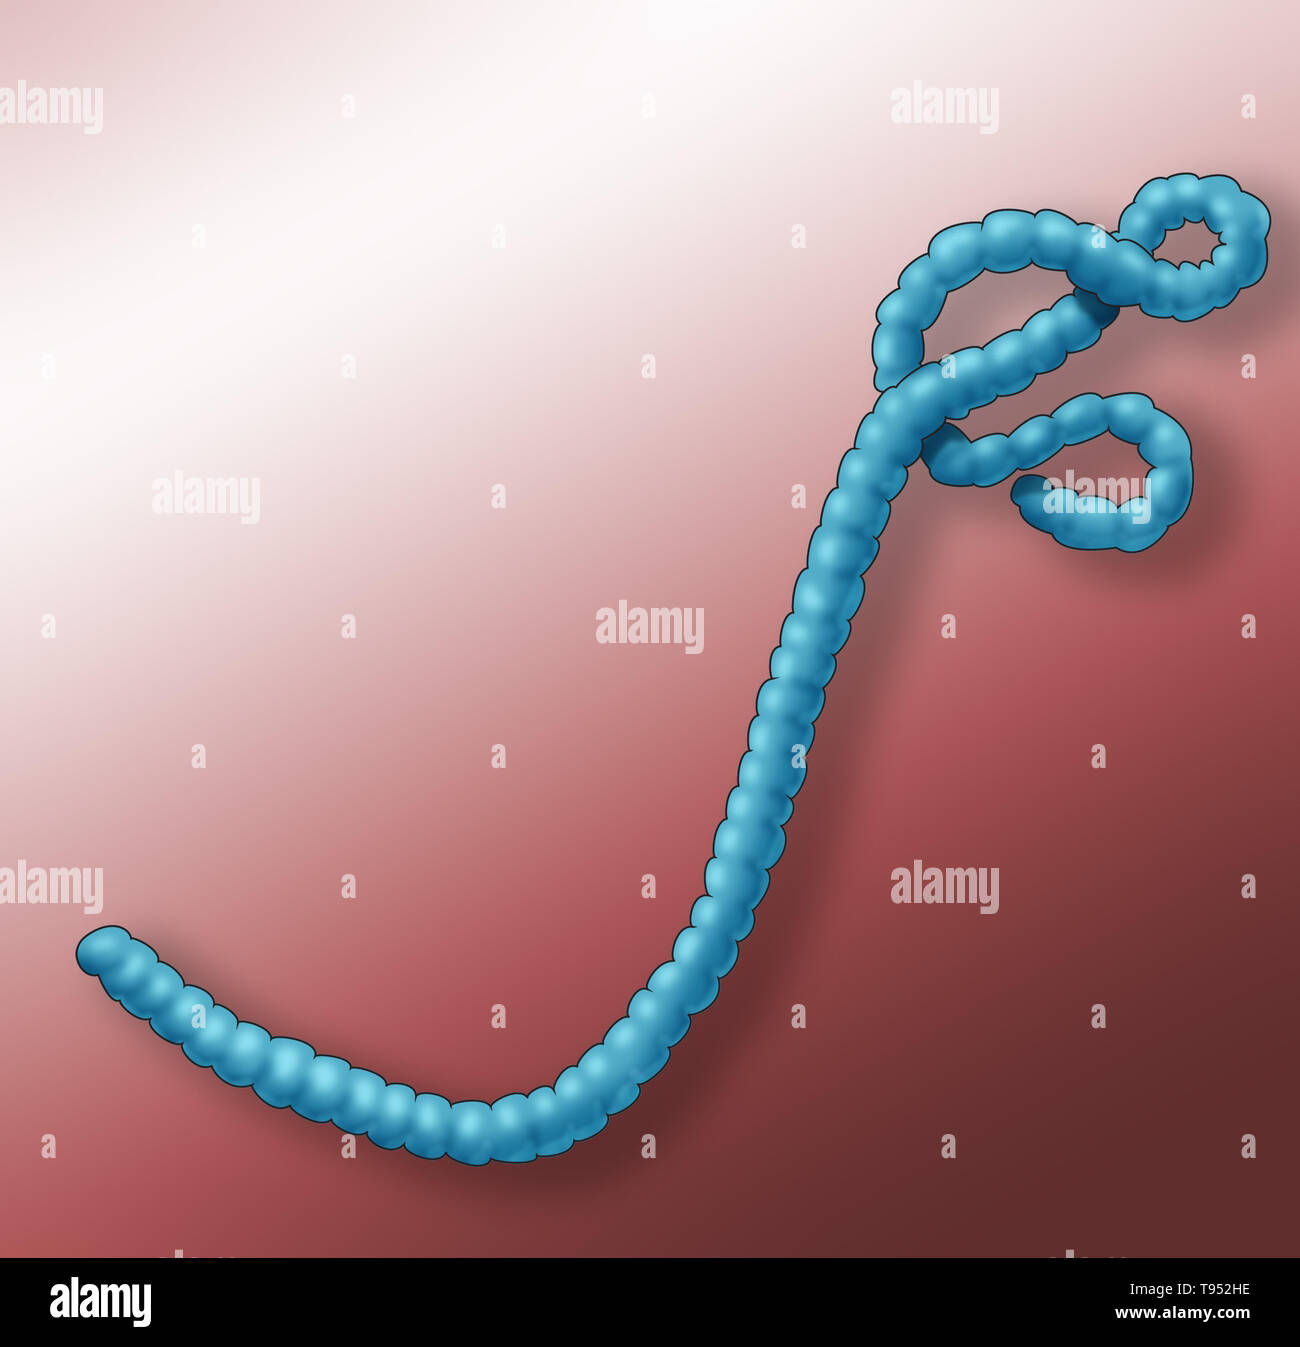 Ilustración del virus del ébola. El Ébola provoca una grave y a menudo mortal fiebre hemorrágica en los seres humanos y otros mamíferos, conocida como enfermedad del virus de Ébola. Foto de stock